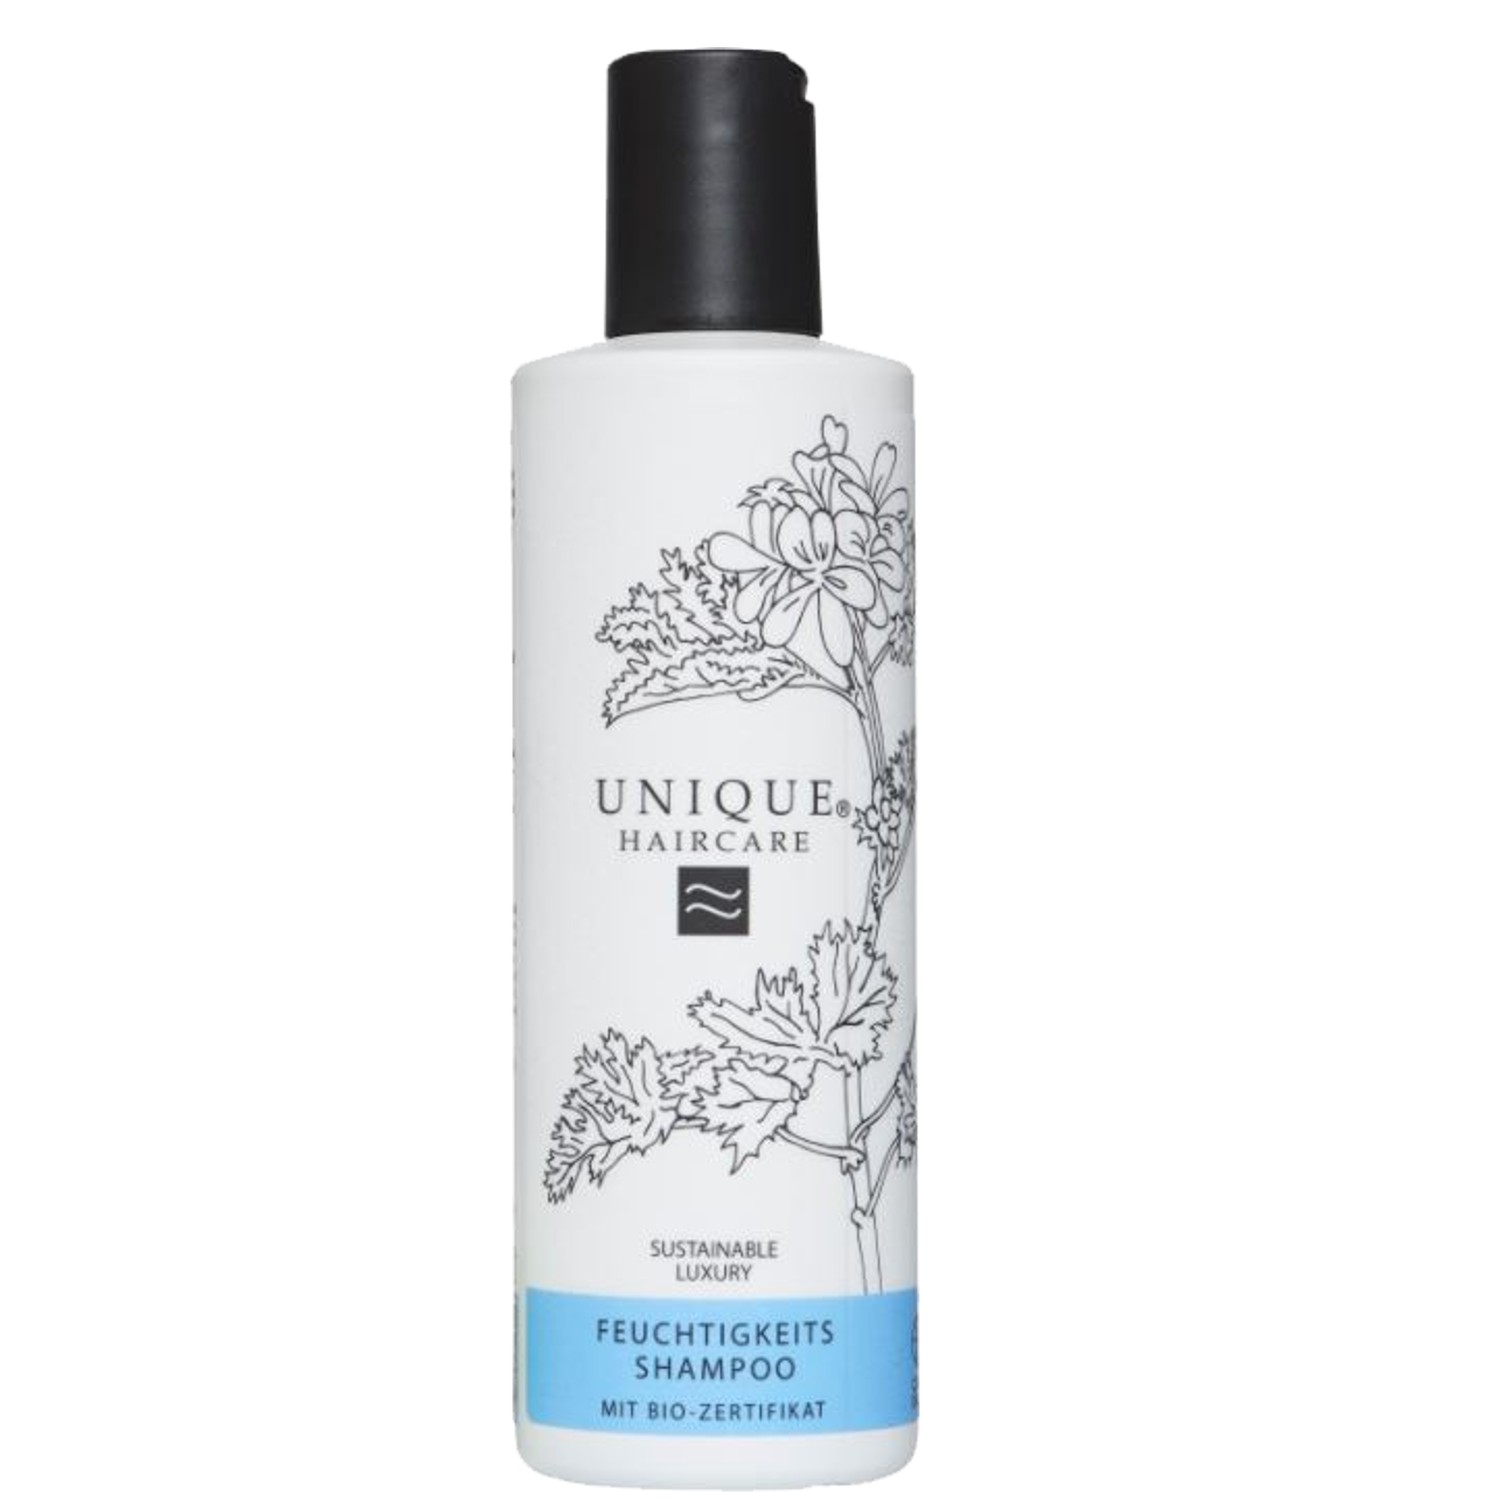 UNIQUE Haircare Feuchtigkeits Shampoo 600 ml